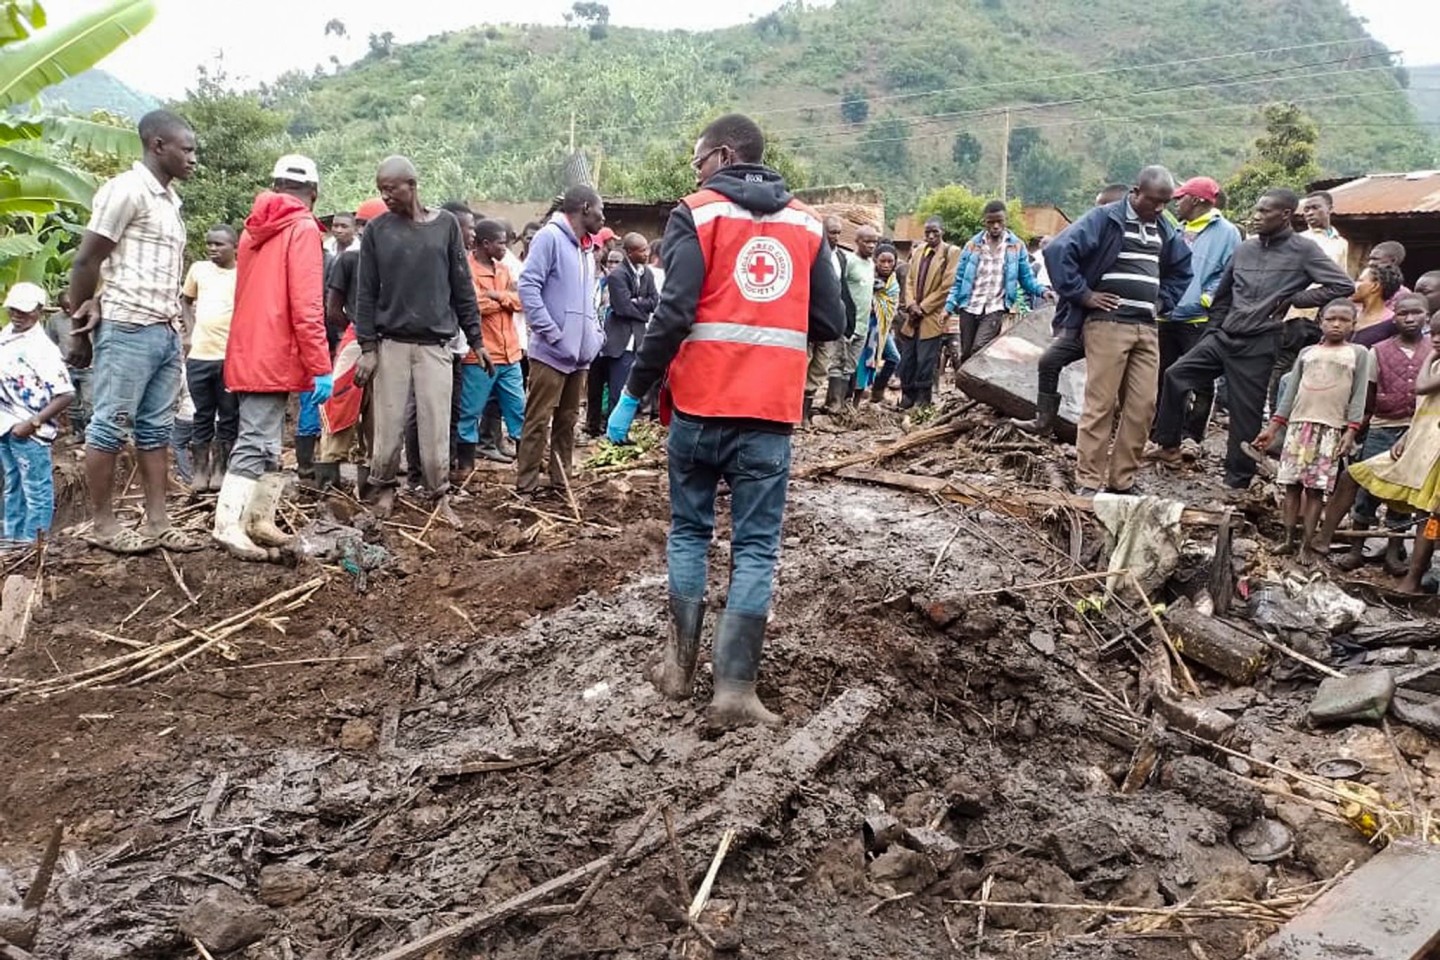 Nach Angabe des Roten Kreuzes von Uganda sind bei einem Erdrutsch mehrere Menschen ums Leben gekommen.